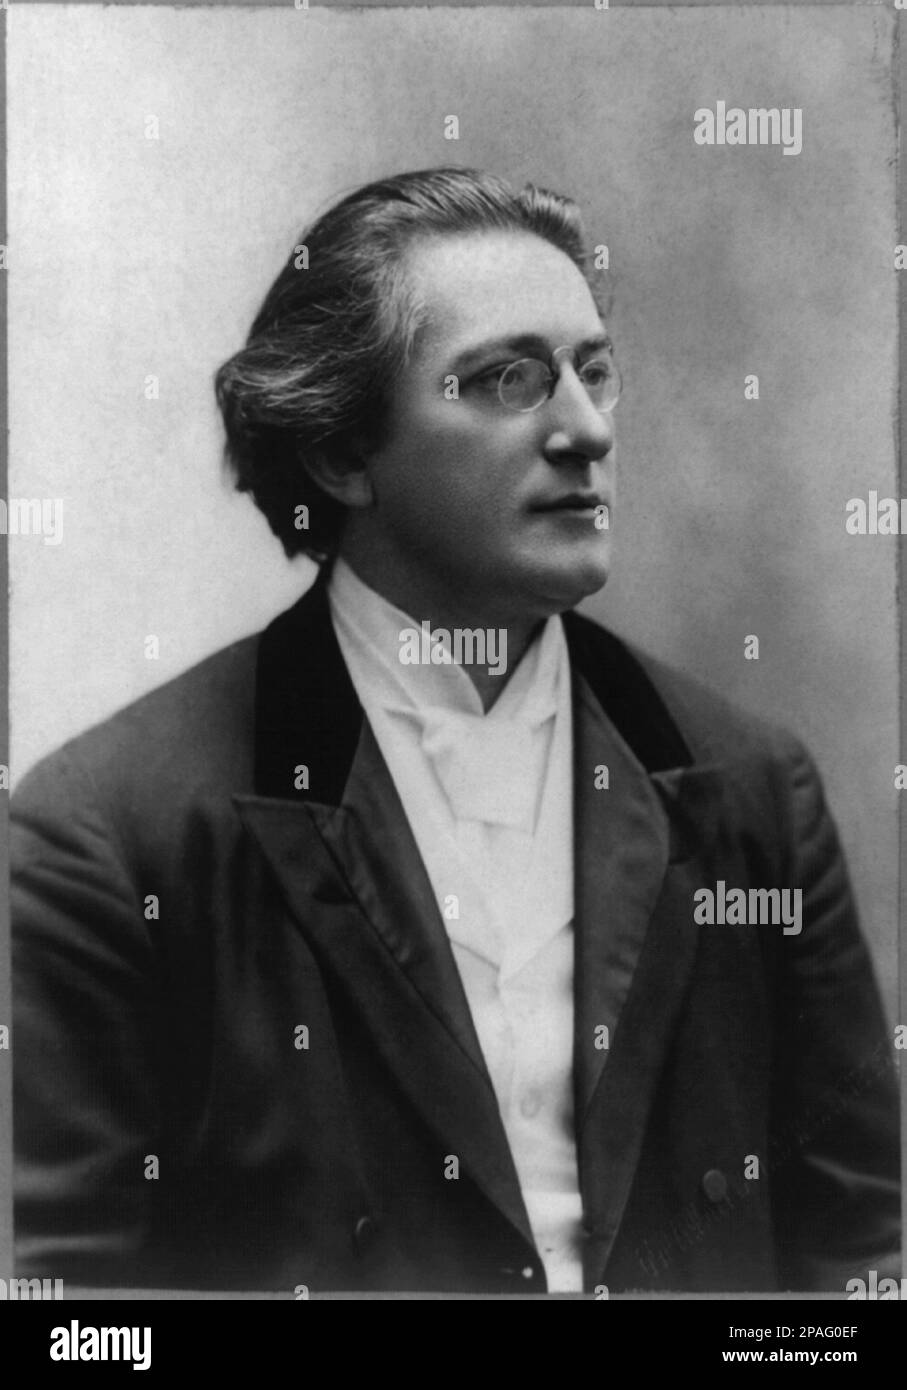 1895 , New York , USA : der gefeierte ungarische Musikdirigent ANTON SEIDL ( 1850 - 1898 ) . Foto von Amie Dupont, New York. Er wurde in Budapest geboren und betrat das Leipziger Konservatorium im Oktober 1870. Er blieb dort bis 1872, als er als einer von Richard Wagners Copyisten nach Bayreuth gerufen wurde. Dort half er bei der Herstellung der ersten fairen Kopie von der Ring des Nibelungen. Es war ganz natürlich, dass er 1876 am ersten Bayreuth Festival teilnahm. Seine Chance als Dirigent kam, als er auf Wagners Empfehlung zum L ernannt wurde Stockfoto